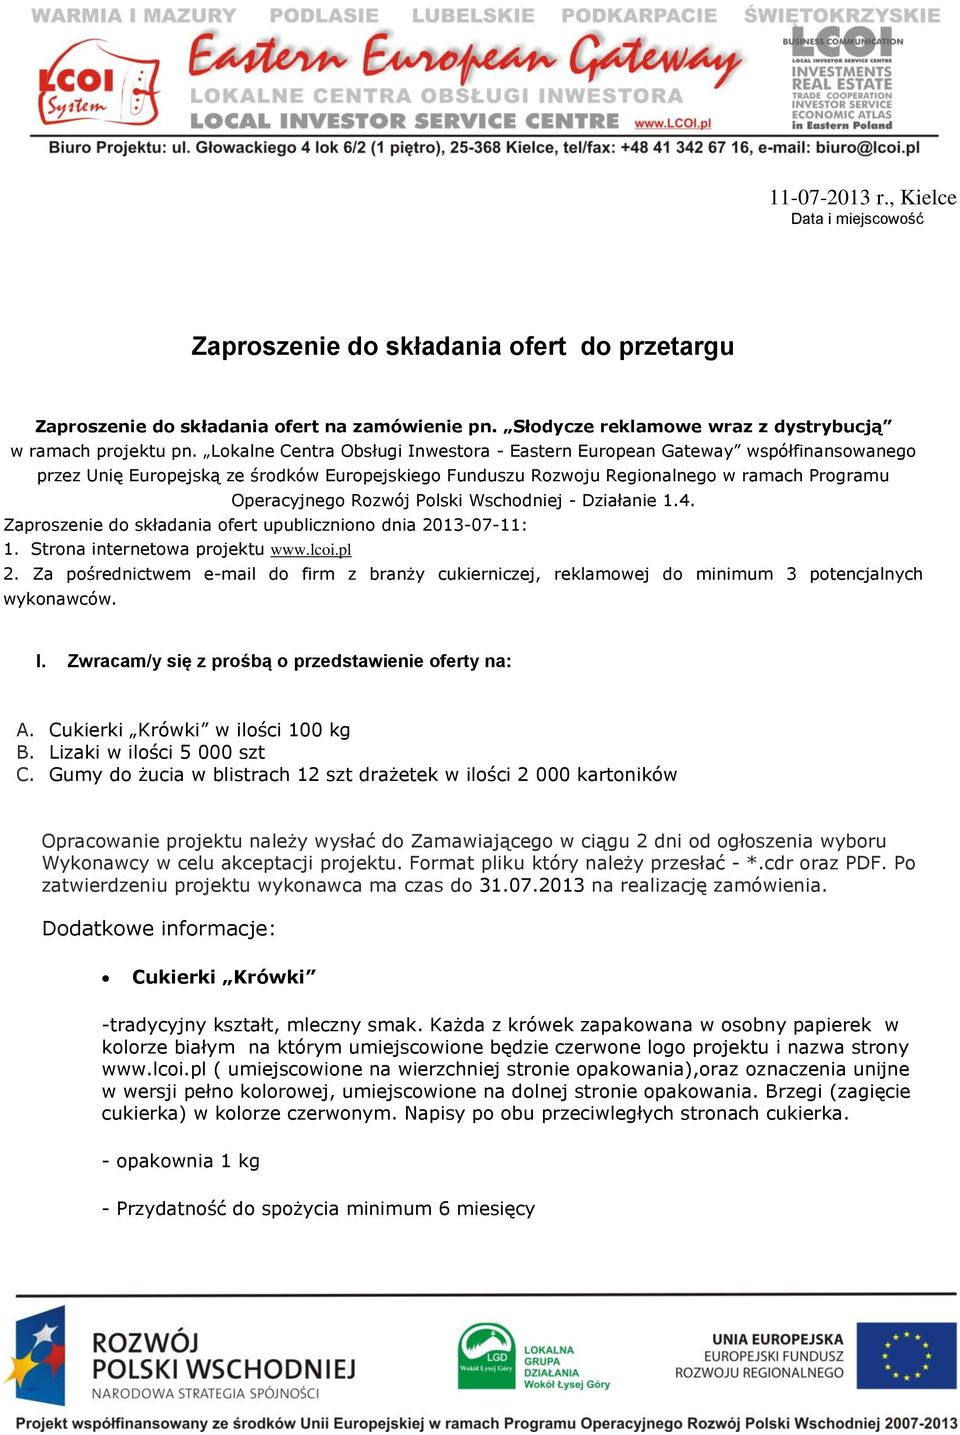 Polski Wschodniej - Działanie 1.4. Zaproszenie do składania ofert upubliczniono dnia 2013-07-11: 1. Strona internetowa projektu www.lcoi.pl 2.